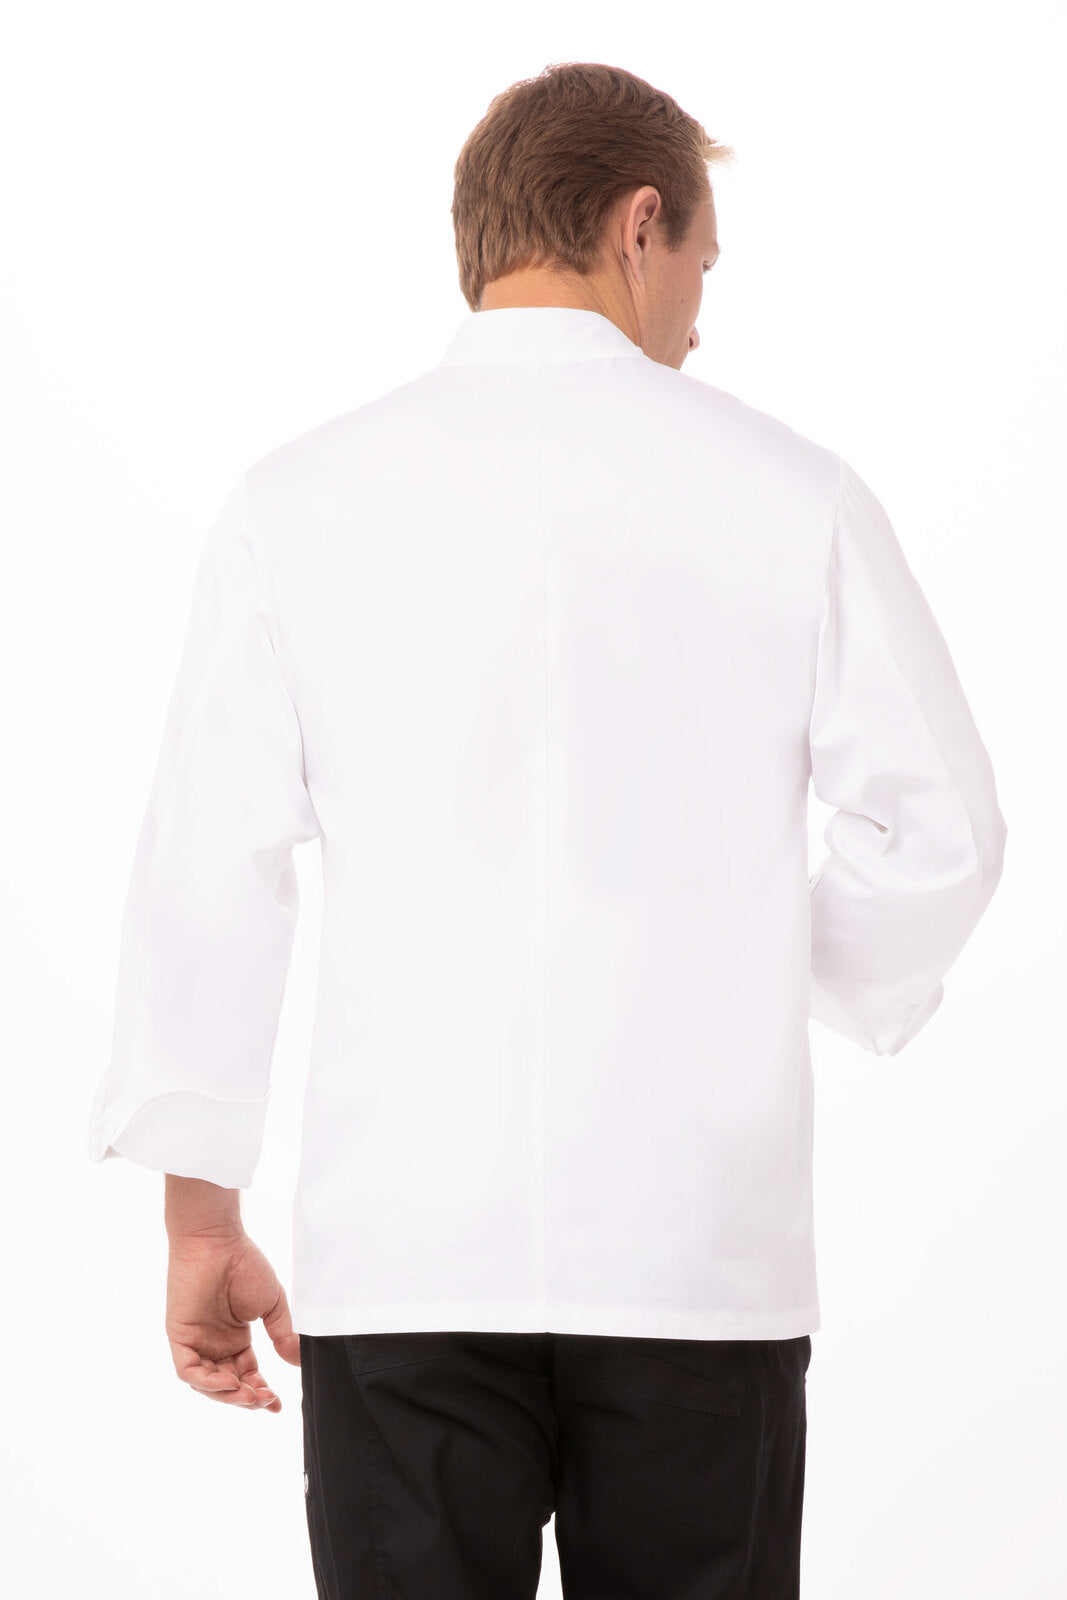 Chef Works - Milan Premium Cotton Chef Jacket